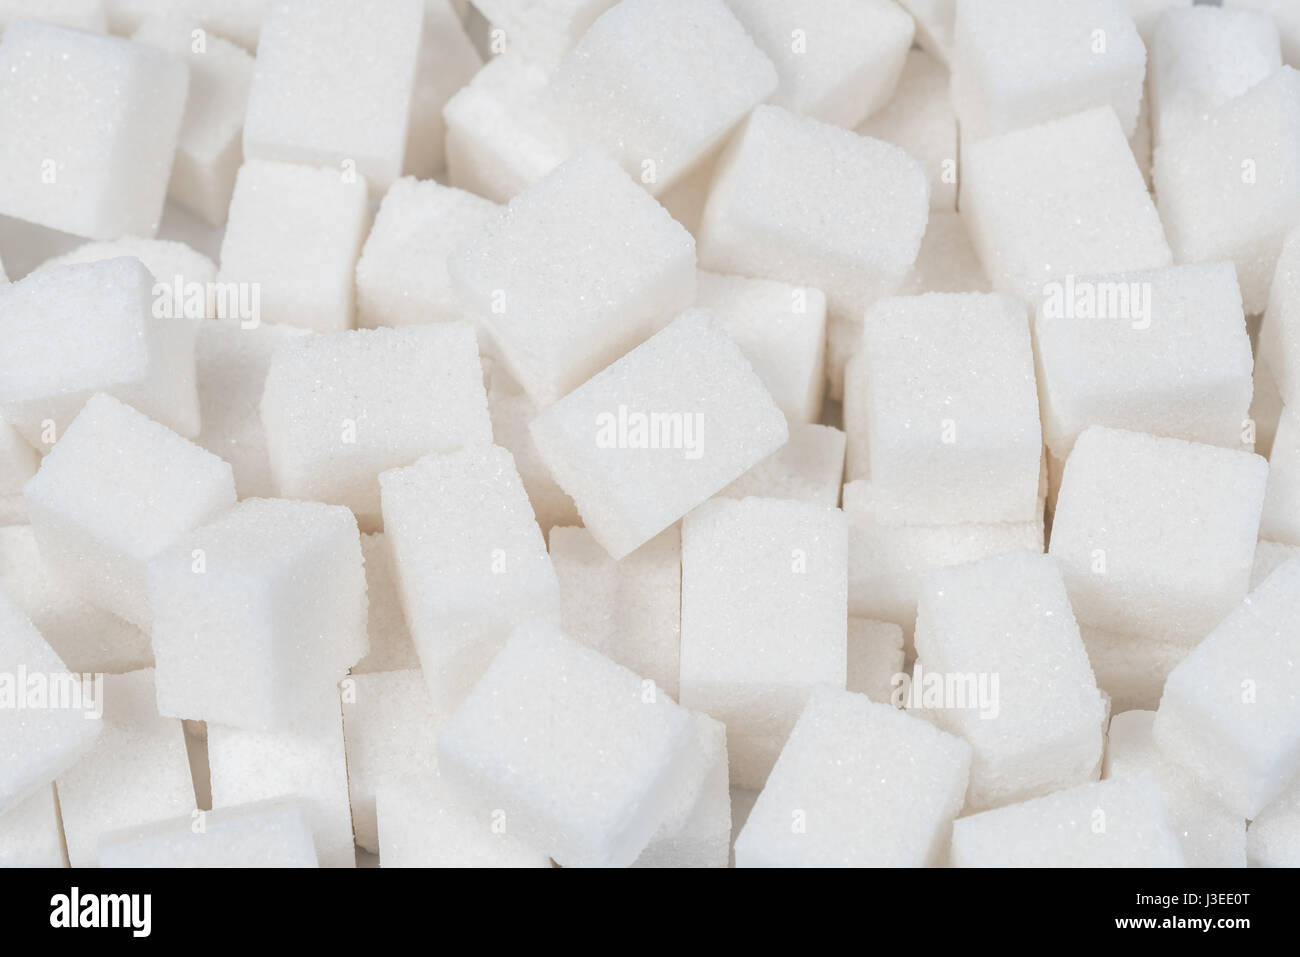 Arrière-plan de sucre ingrédient alimentaire sucré avec un gros plan d'un tas de délicieux morceaux de cubes blanc comme un symbole de la cuisine et l'alimentation pour la santé liés au diabète et l'apport en calories. Banque D'Images